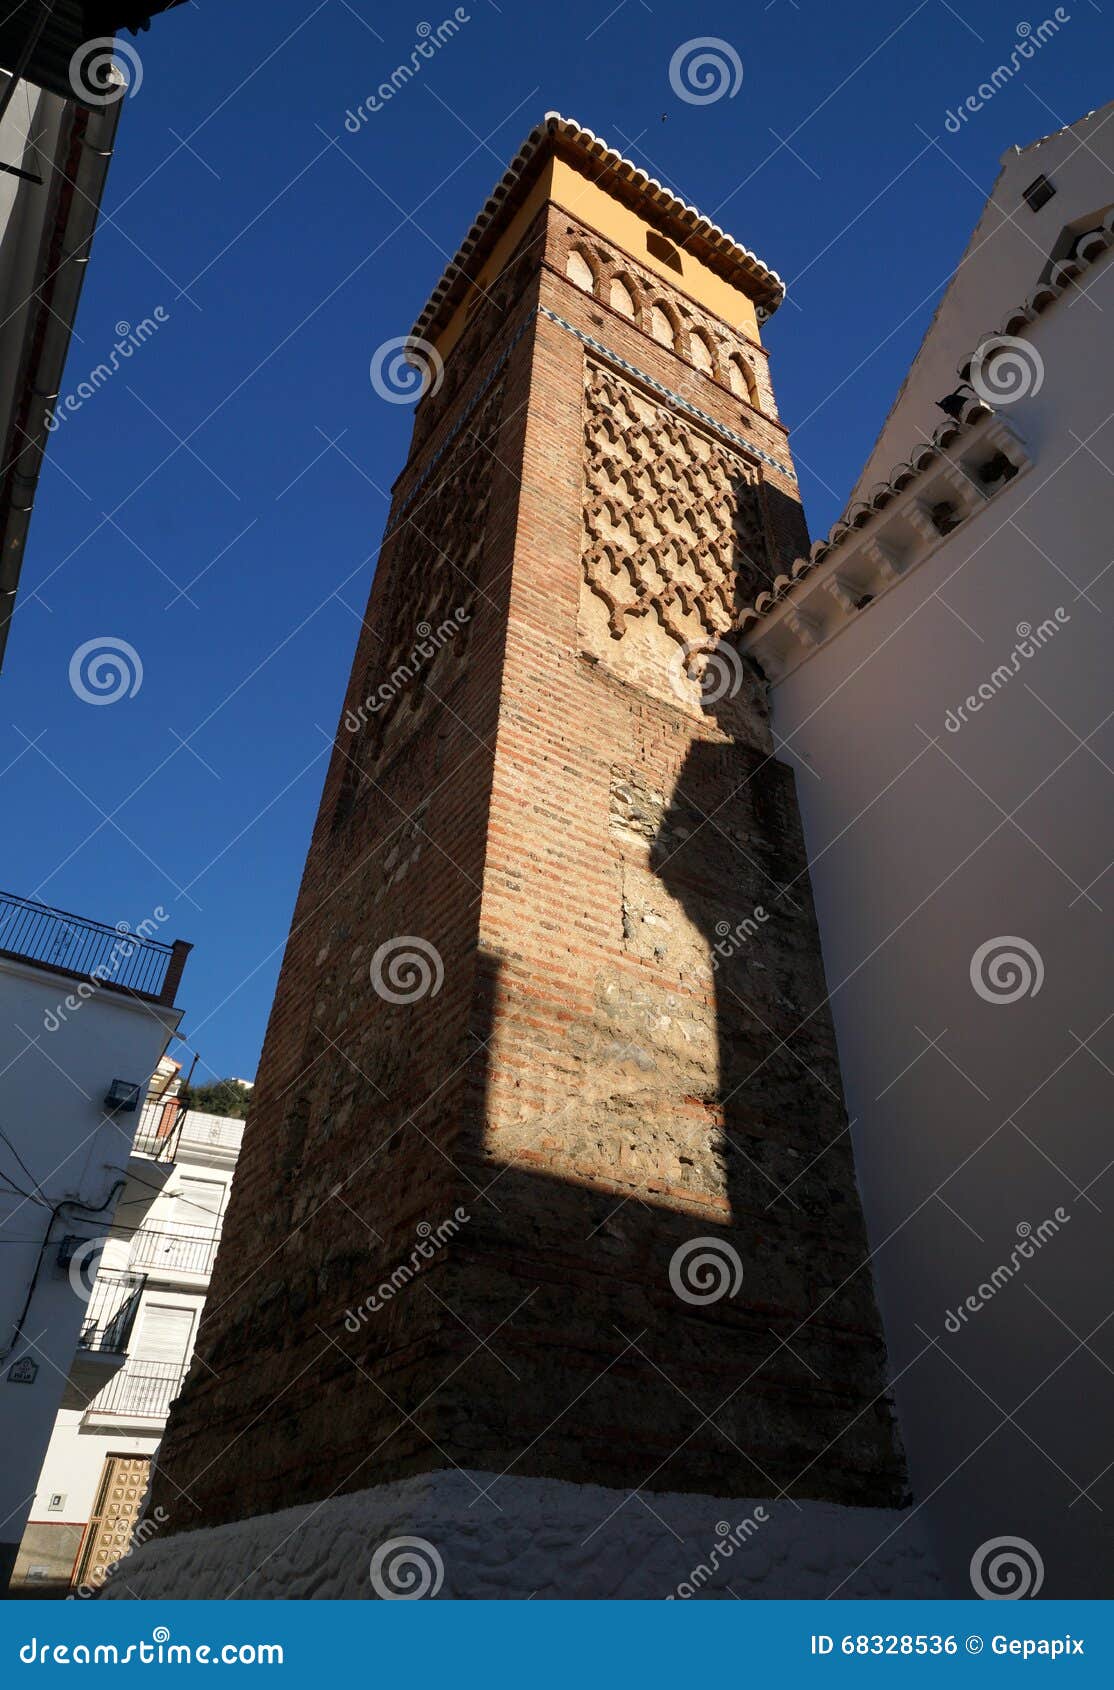 former minaret